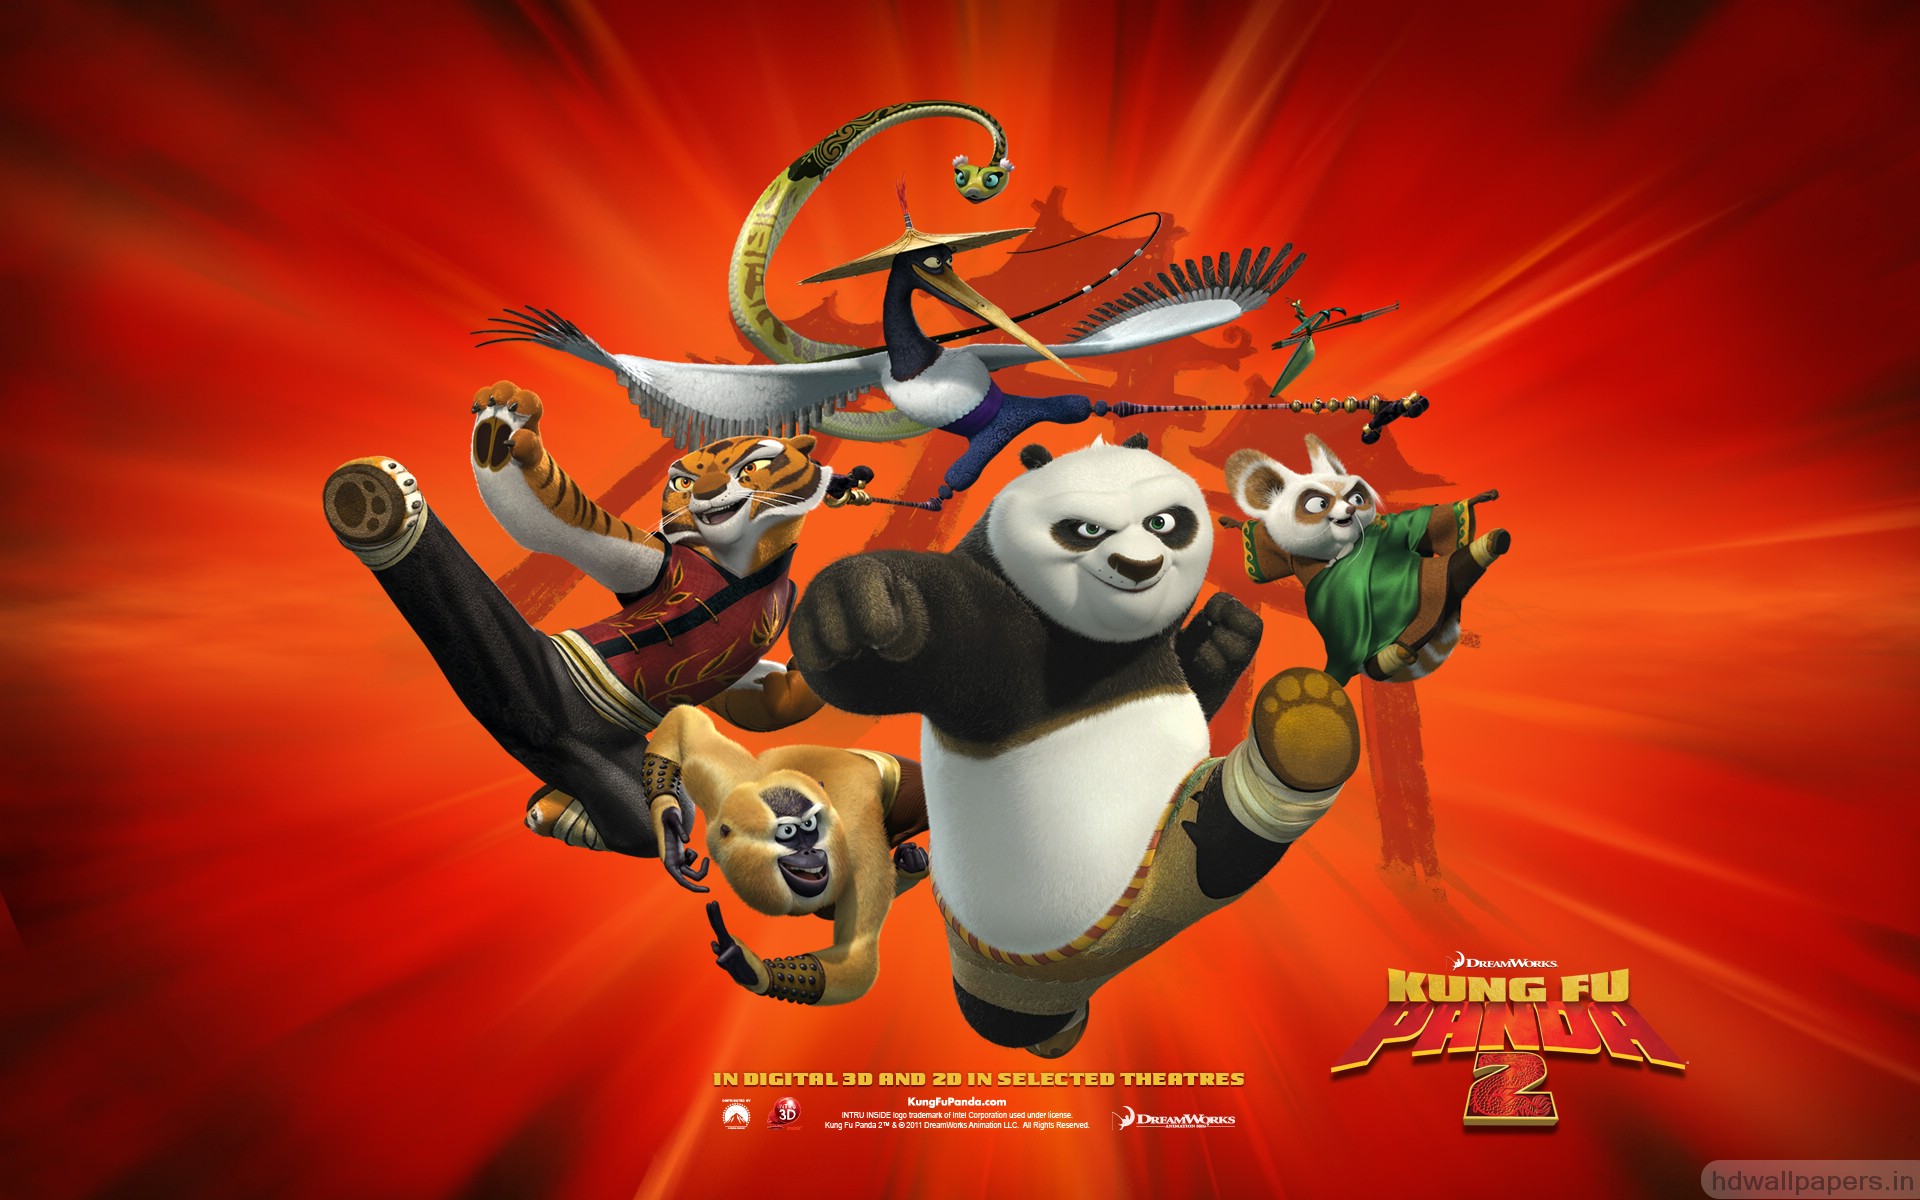 Kung fu panda game free. download full version for windows 7